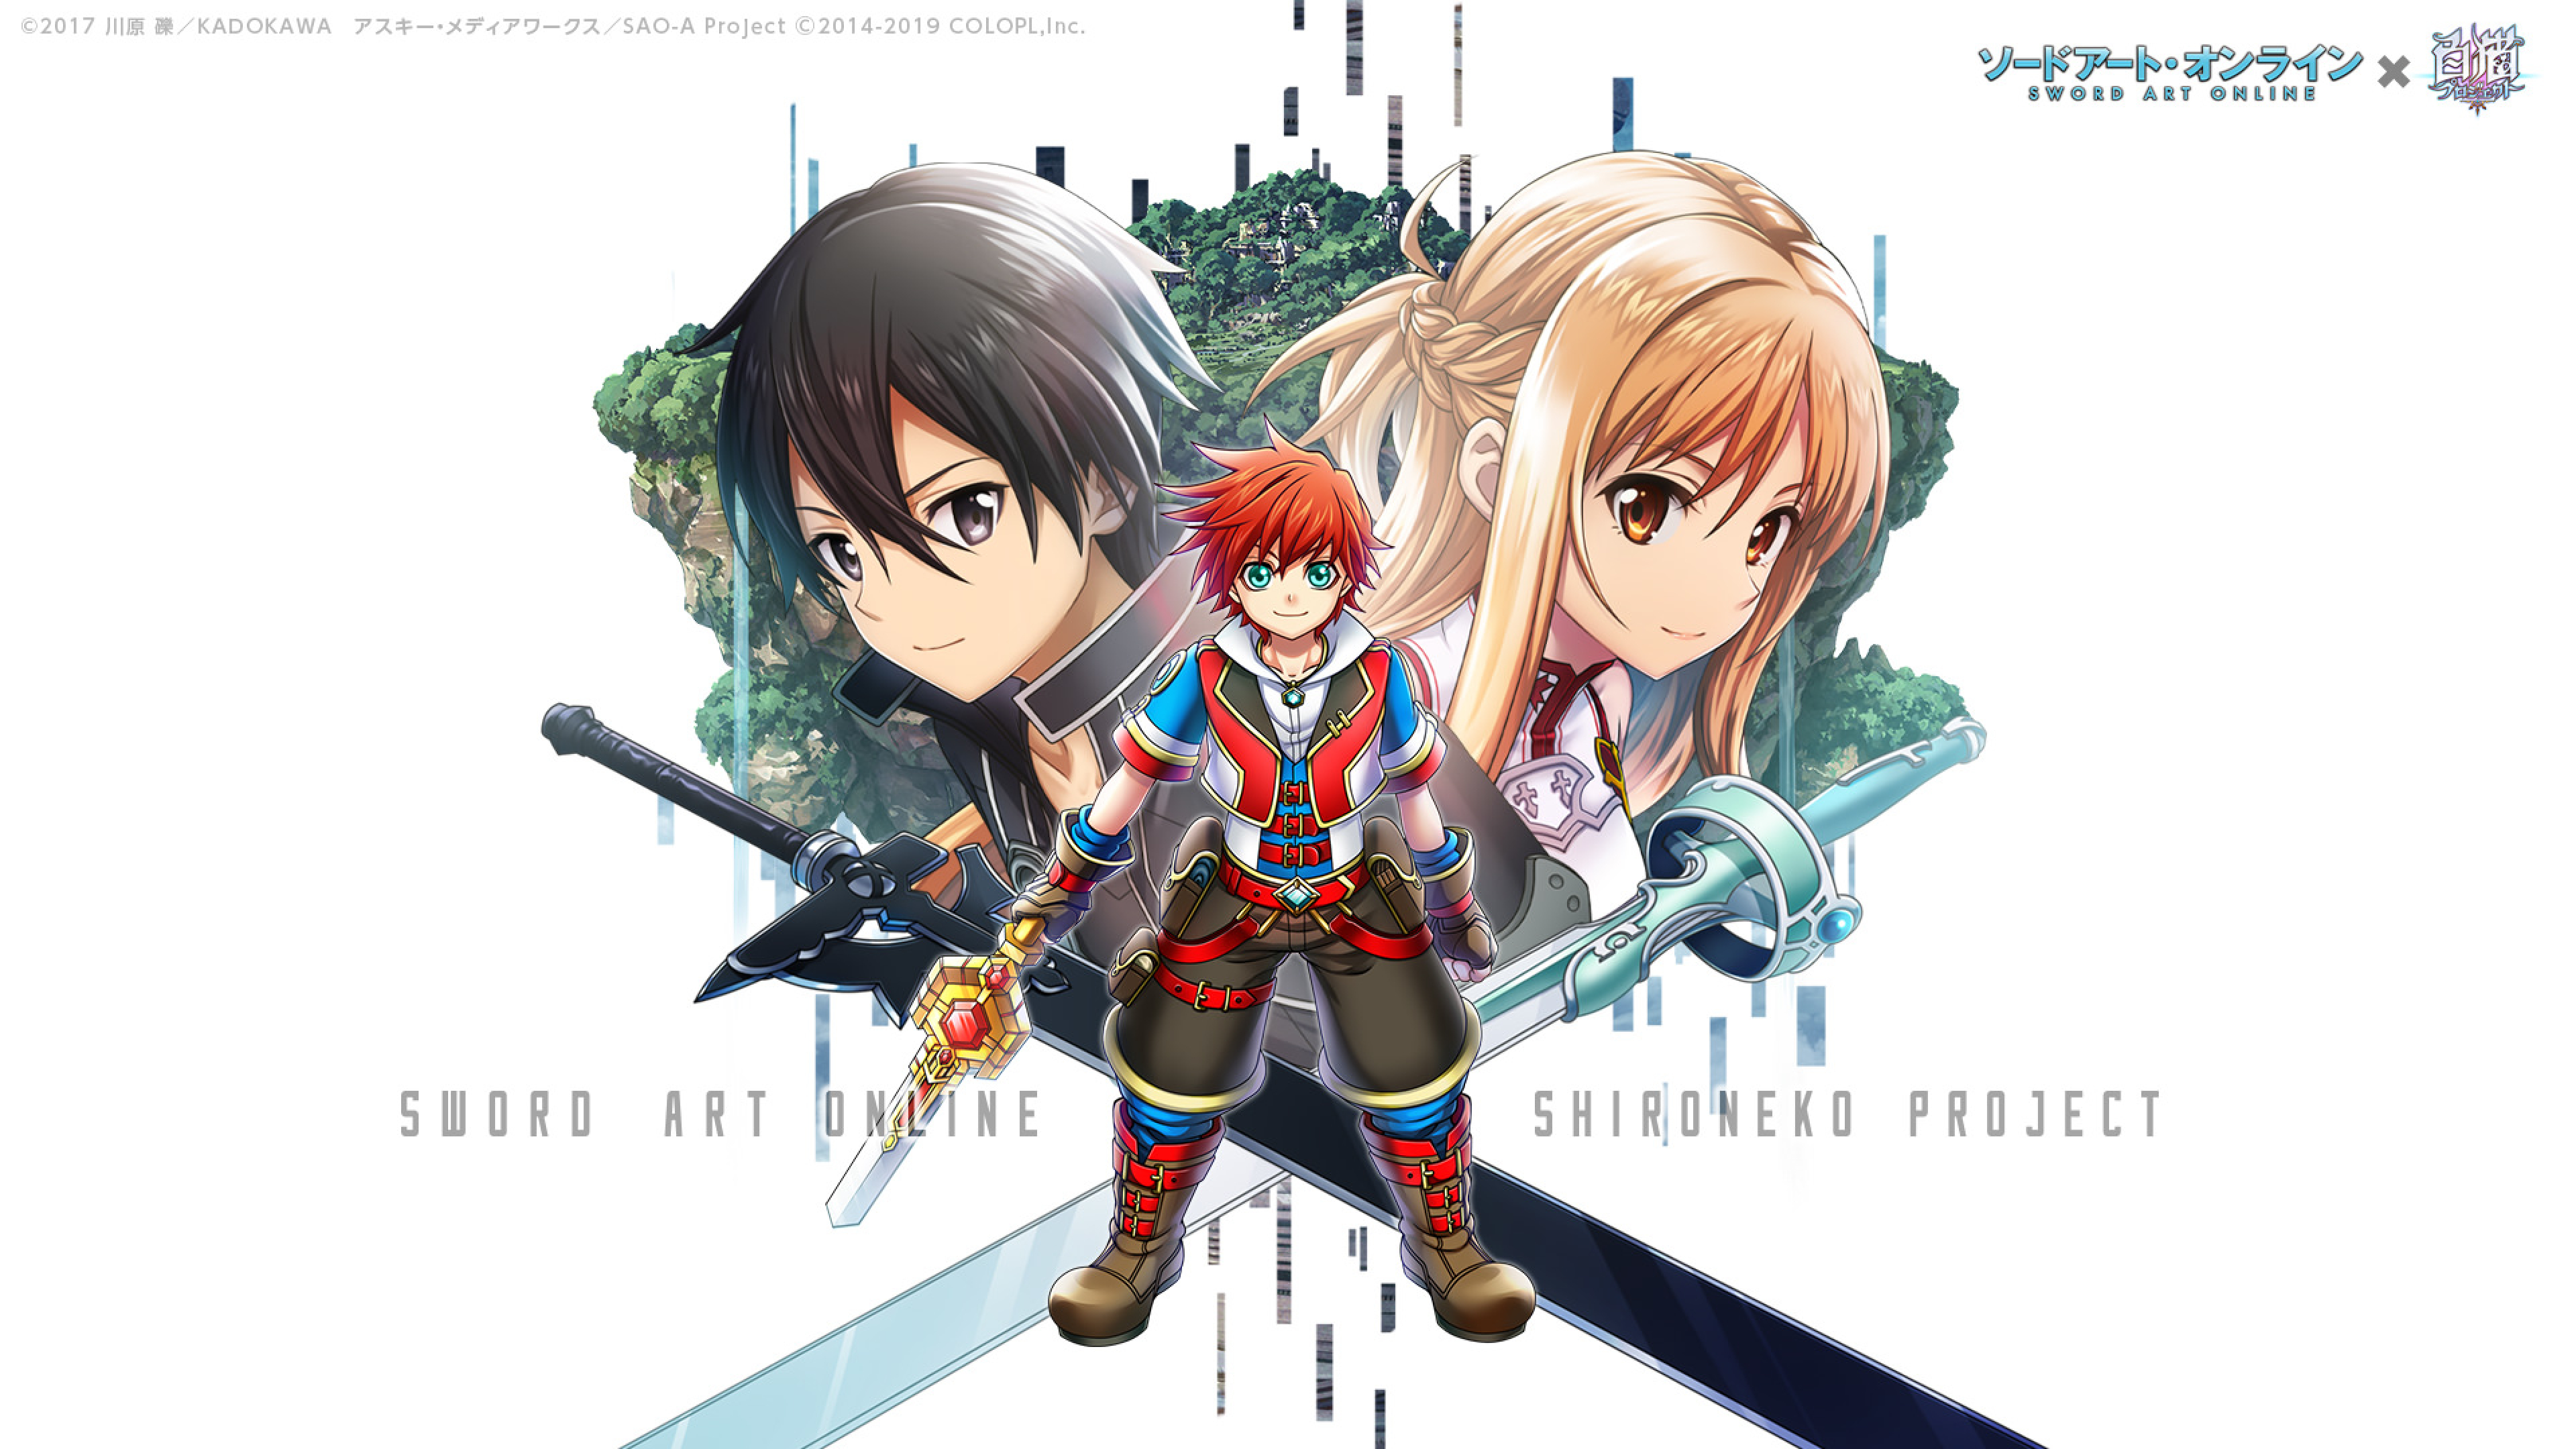 3840x2160 Sword Art Online Crossover Shironeko Project 4k